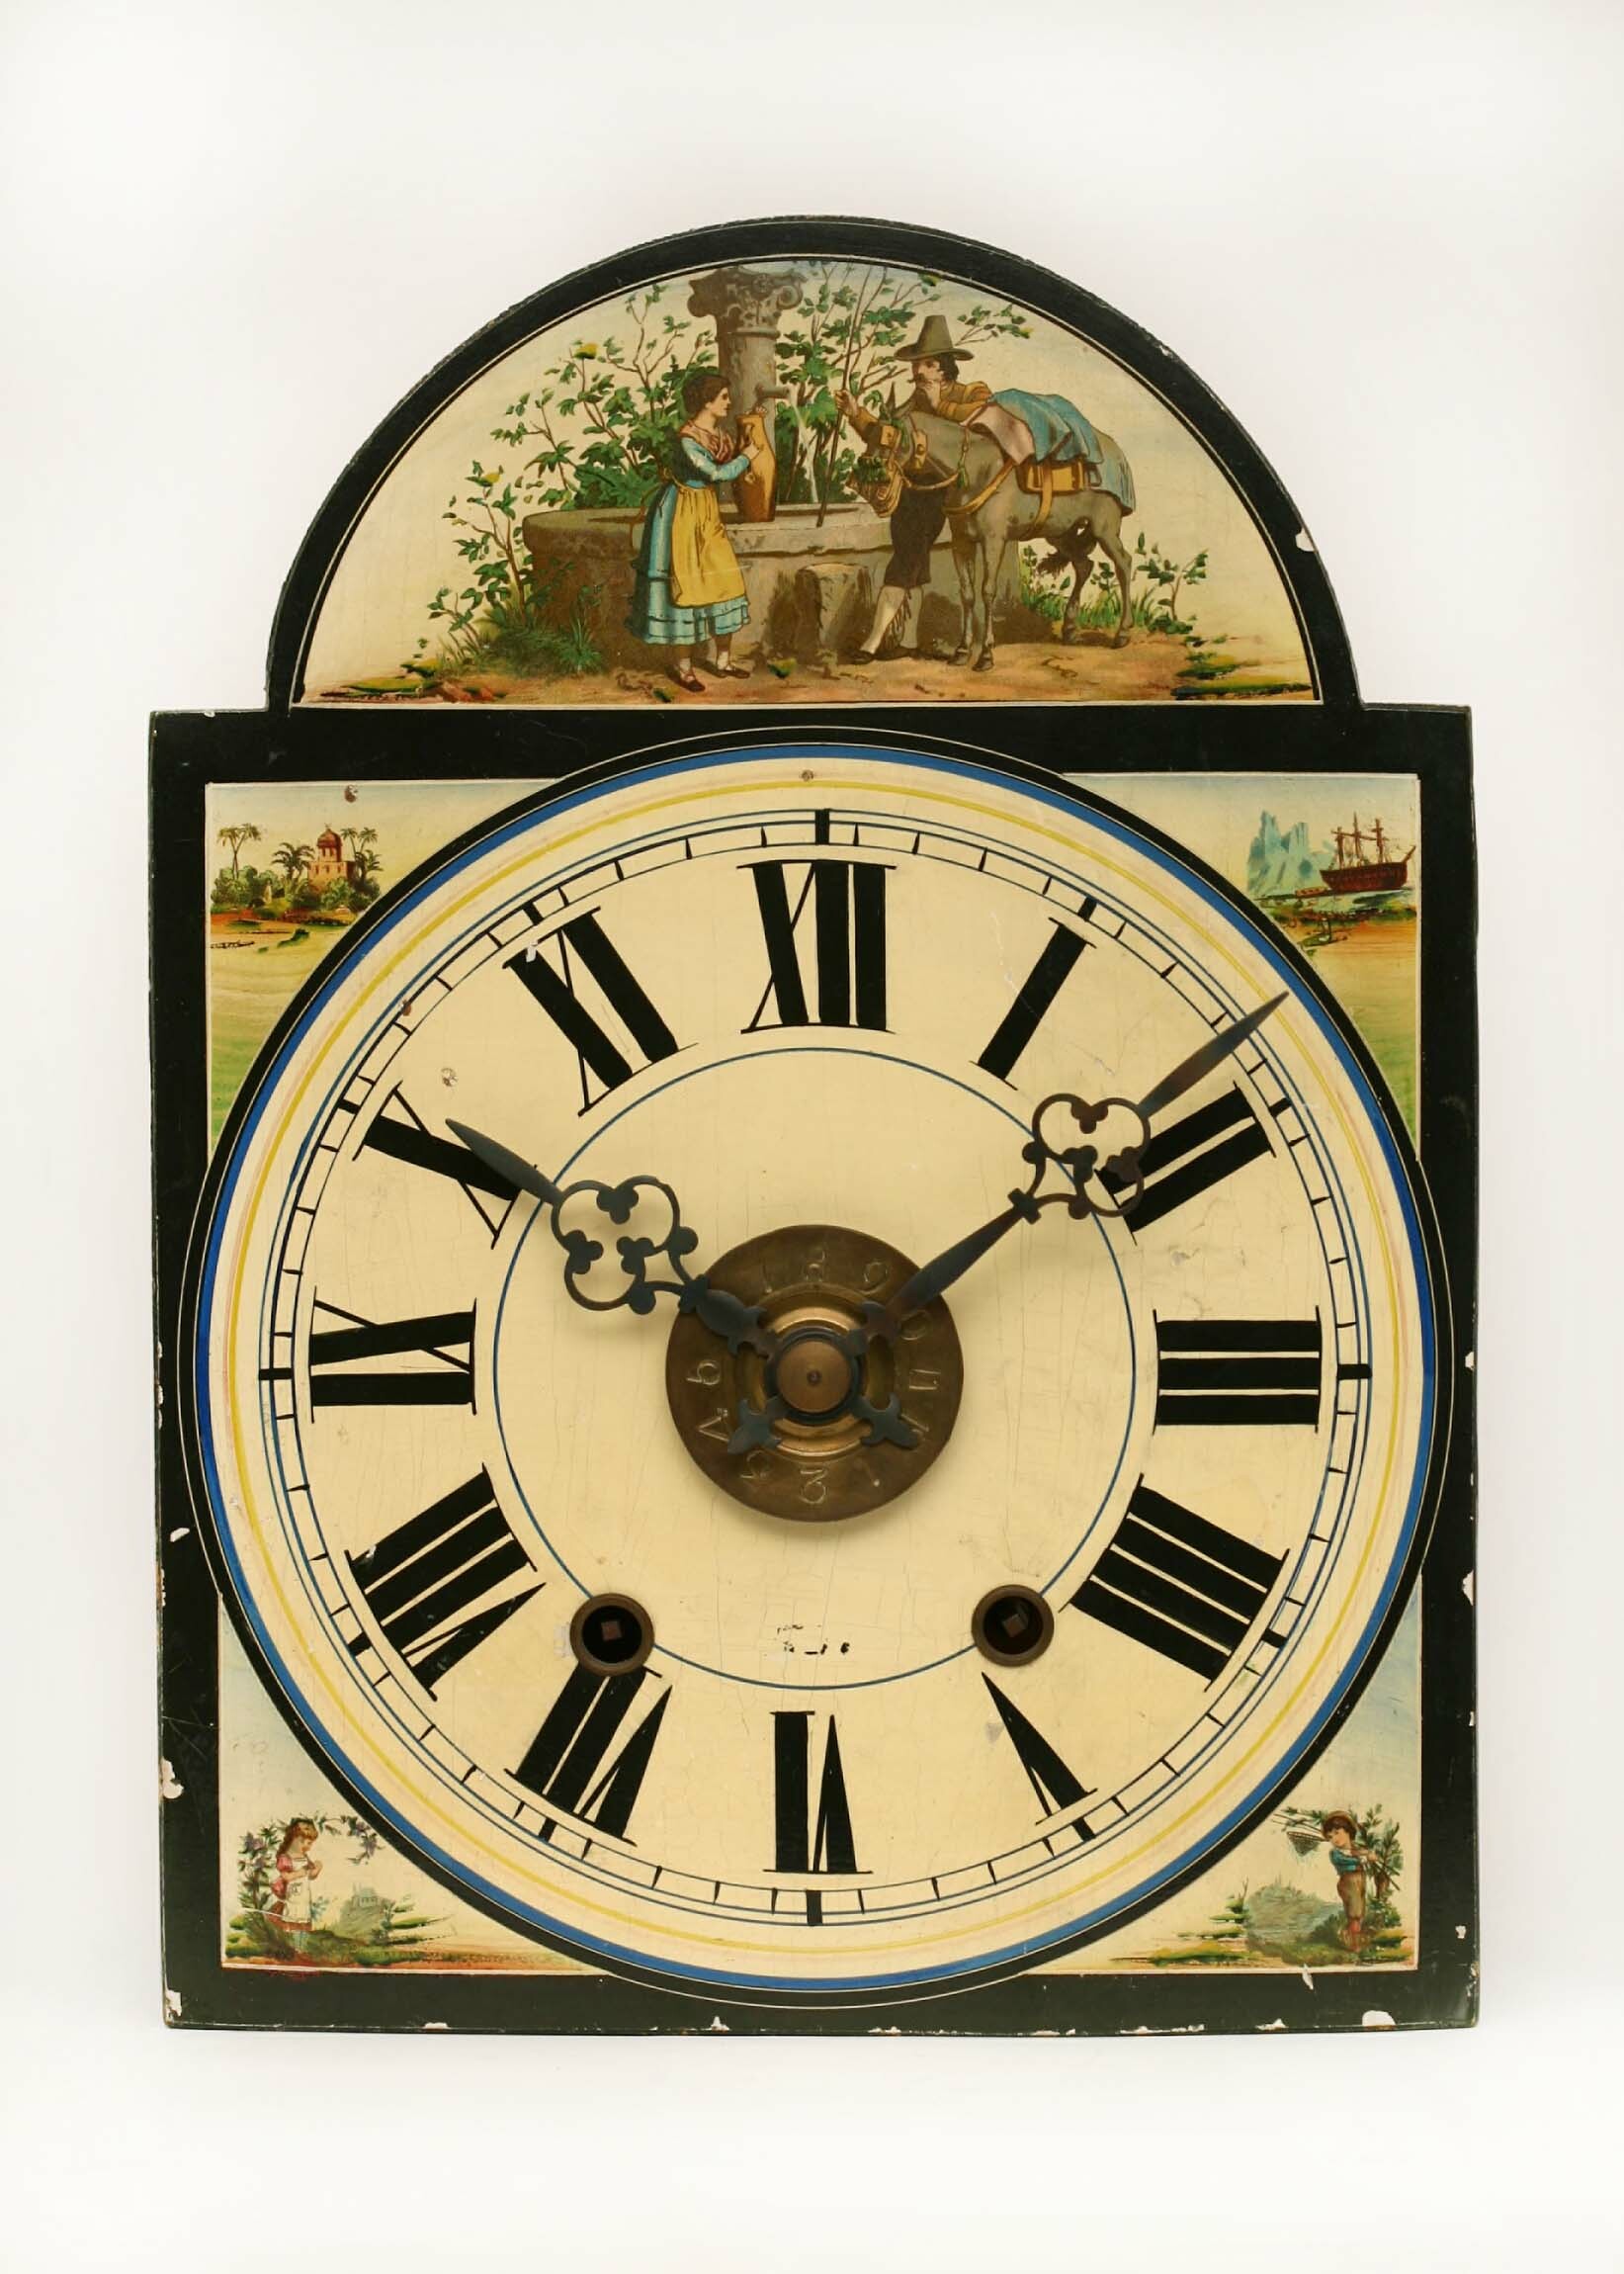 Lackschilduhr, Schwarzwald, 2. Hälfte 19. Jahrhundert (Deutsches Uhrenmuseum CC BY-SA)